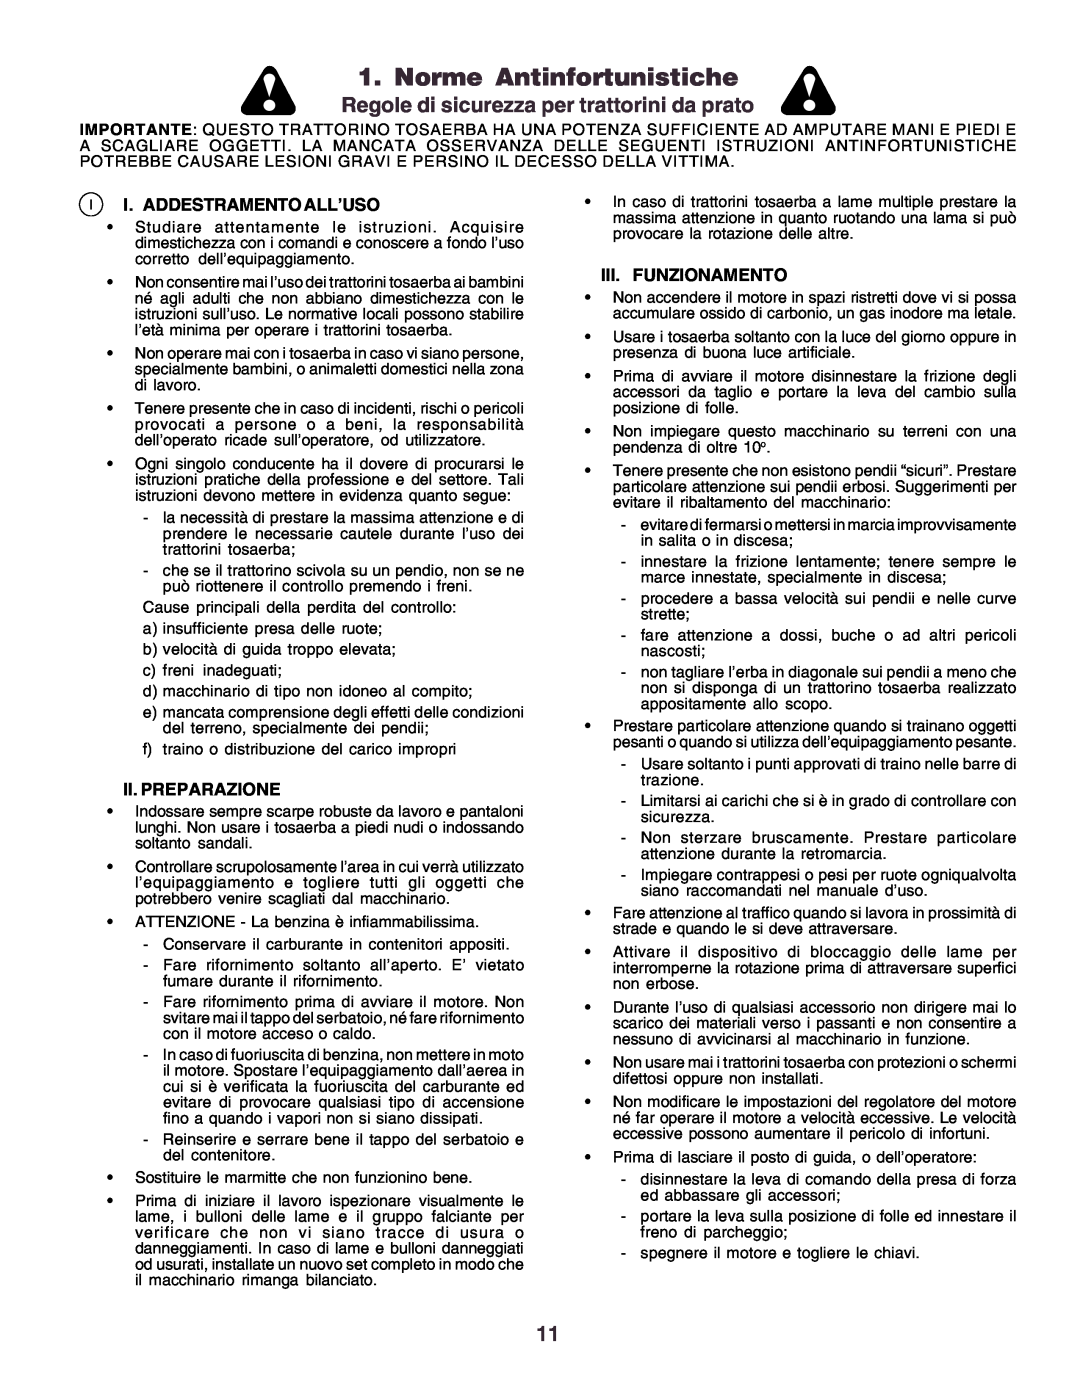 Husqvarna CT160 Norme Antinfortunistiche, Regole di sicurezza per trattorini da prato, I. Addestramento All’Uso 